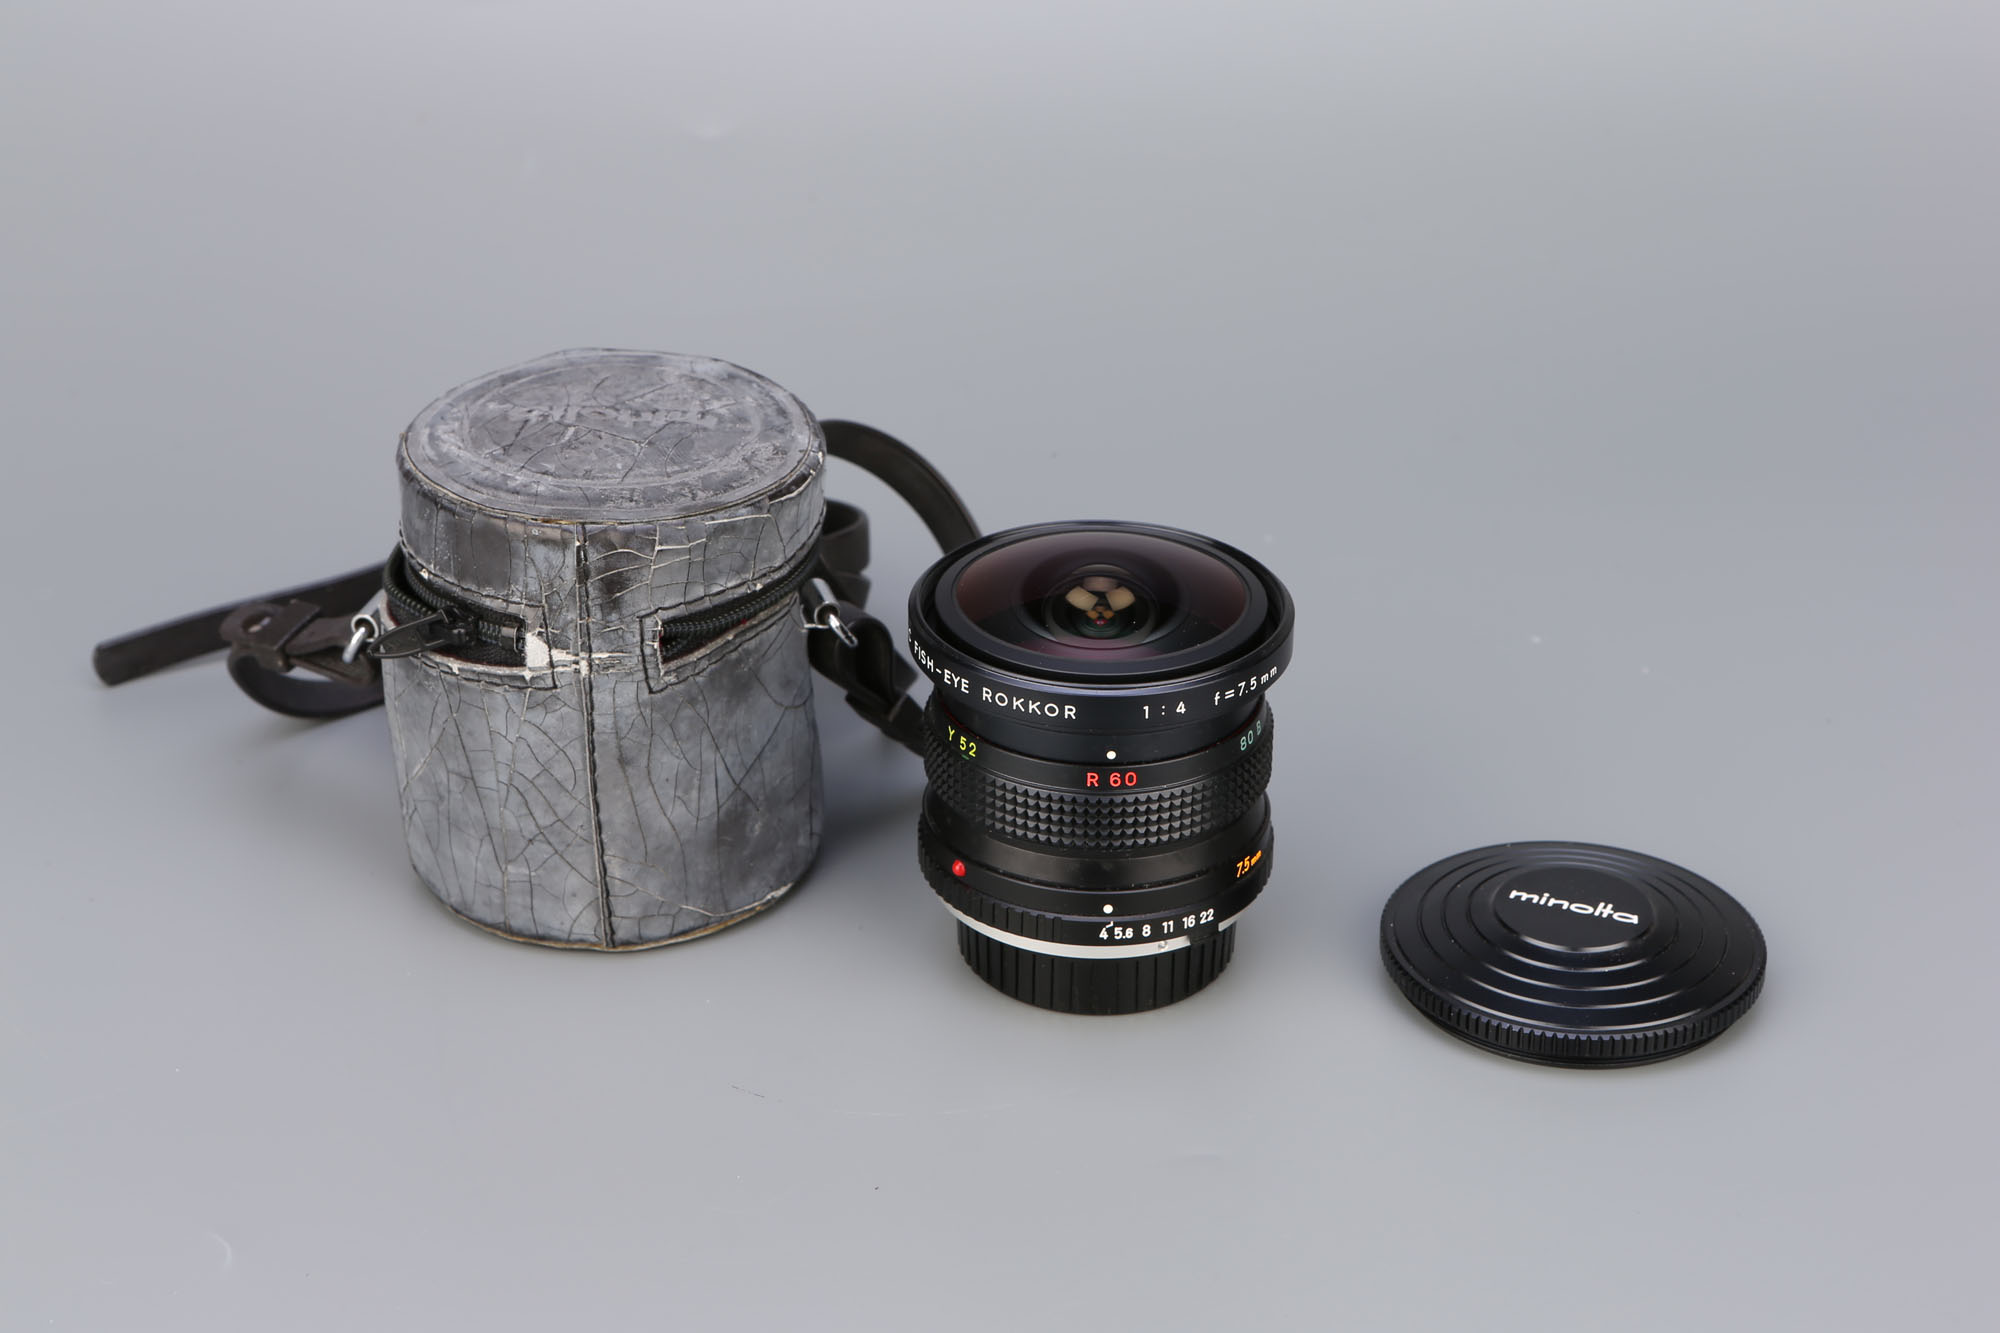 A Minolta MD Fish-Eye Rokkor f/4 7.5mm Lens,